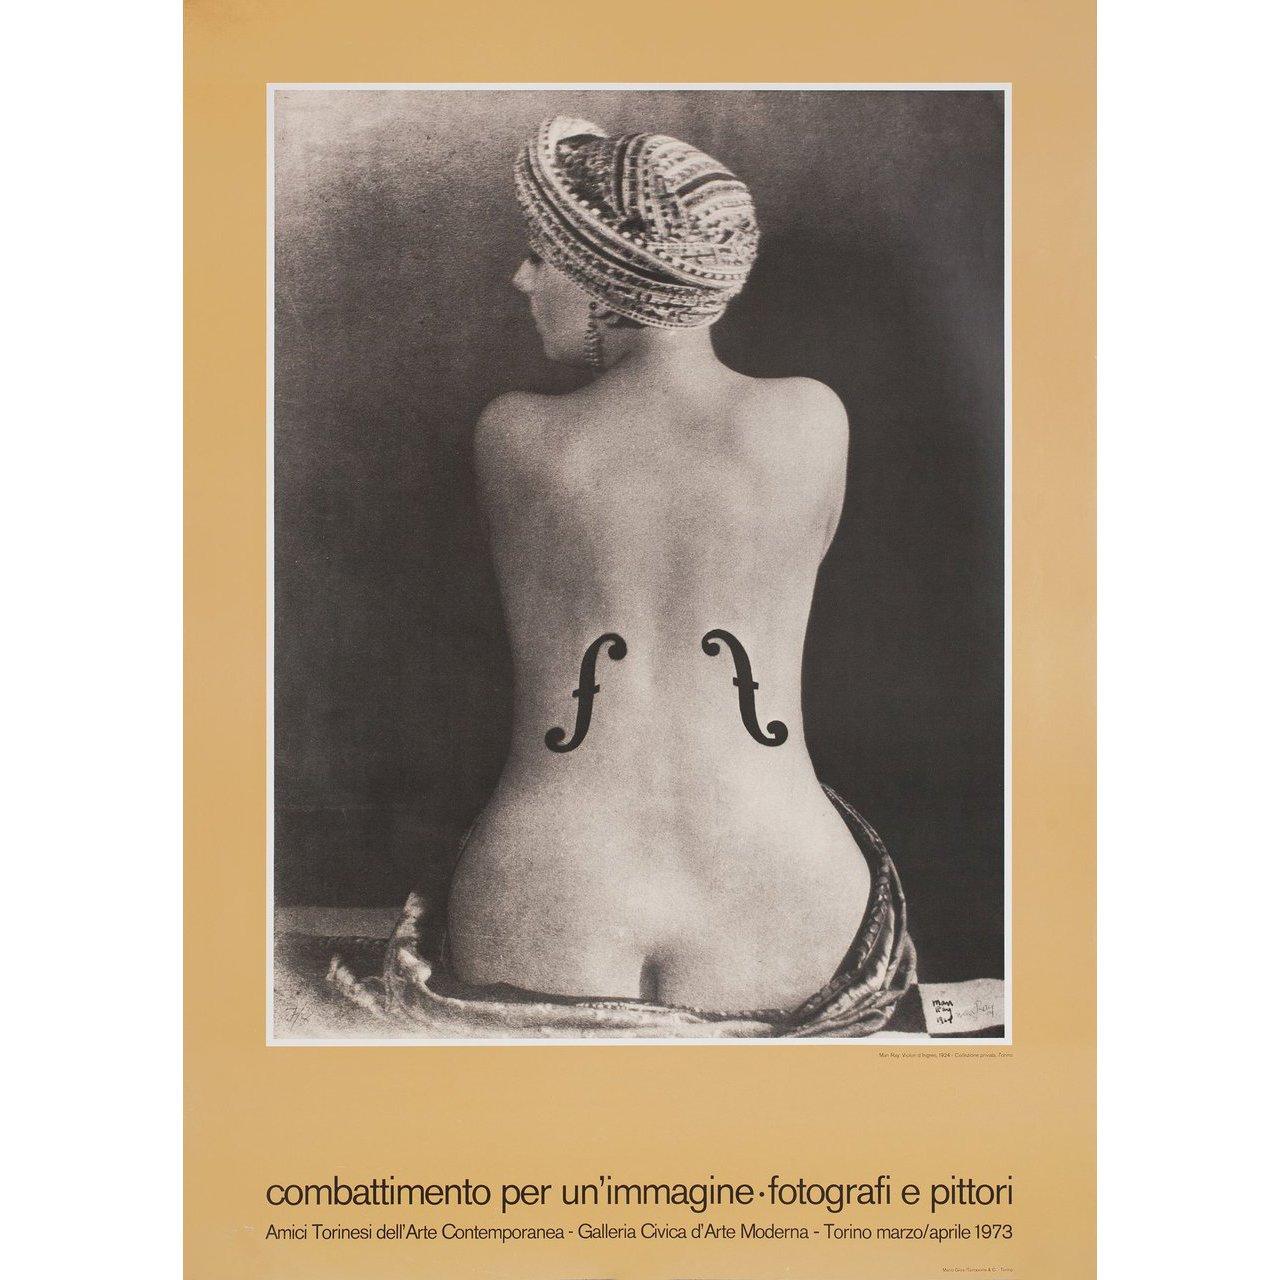 Originales italienisches Plakat von Man Ray aus dem Jahr 1974 für die Ausstellung Man Ray: Combattimento per un'immagine-photografi e pittori. Sehr guter Zustand, gerollt. Bitte beachten Sie: Die Größe ist in Zoll angegeben und die tatsächliche